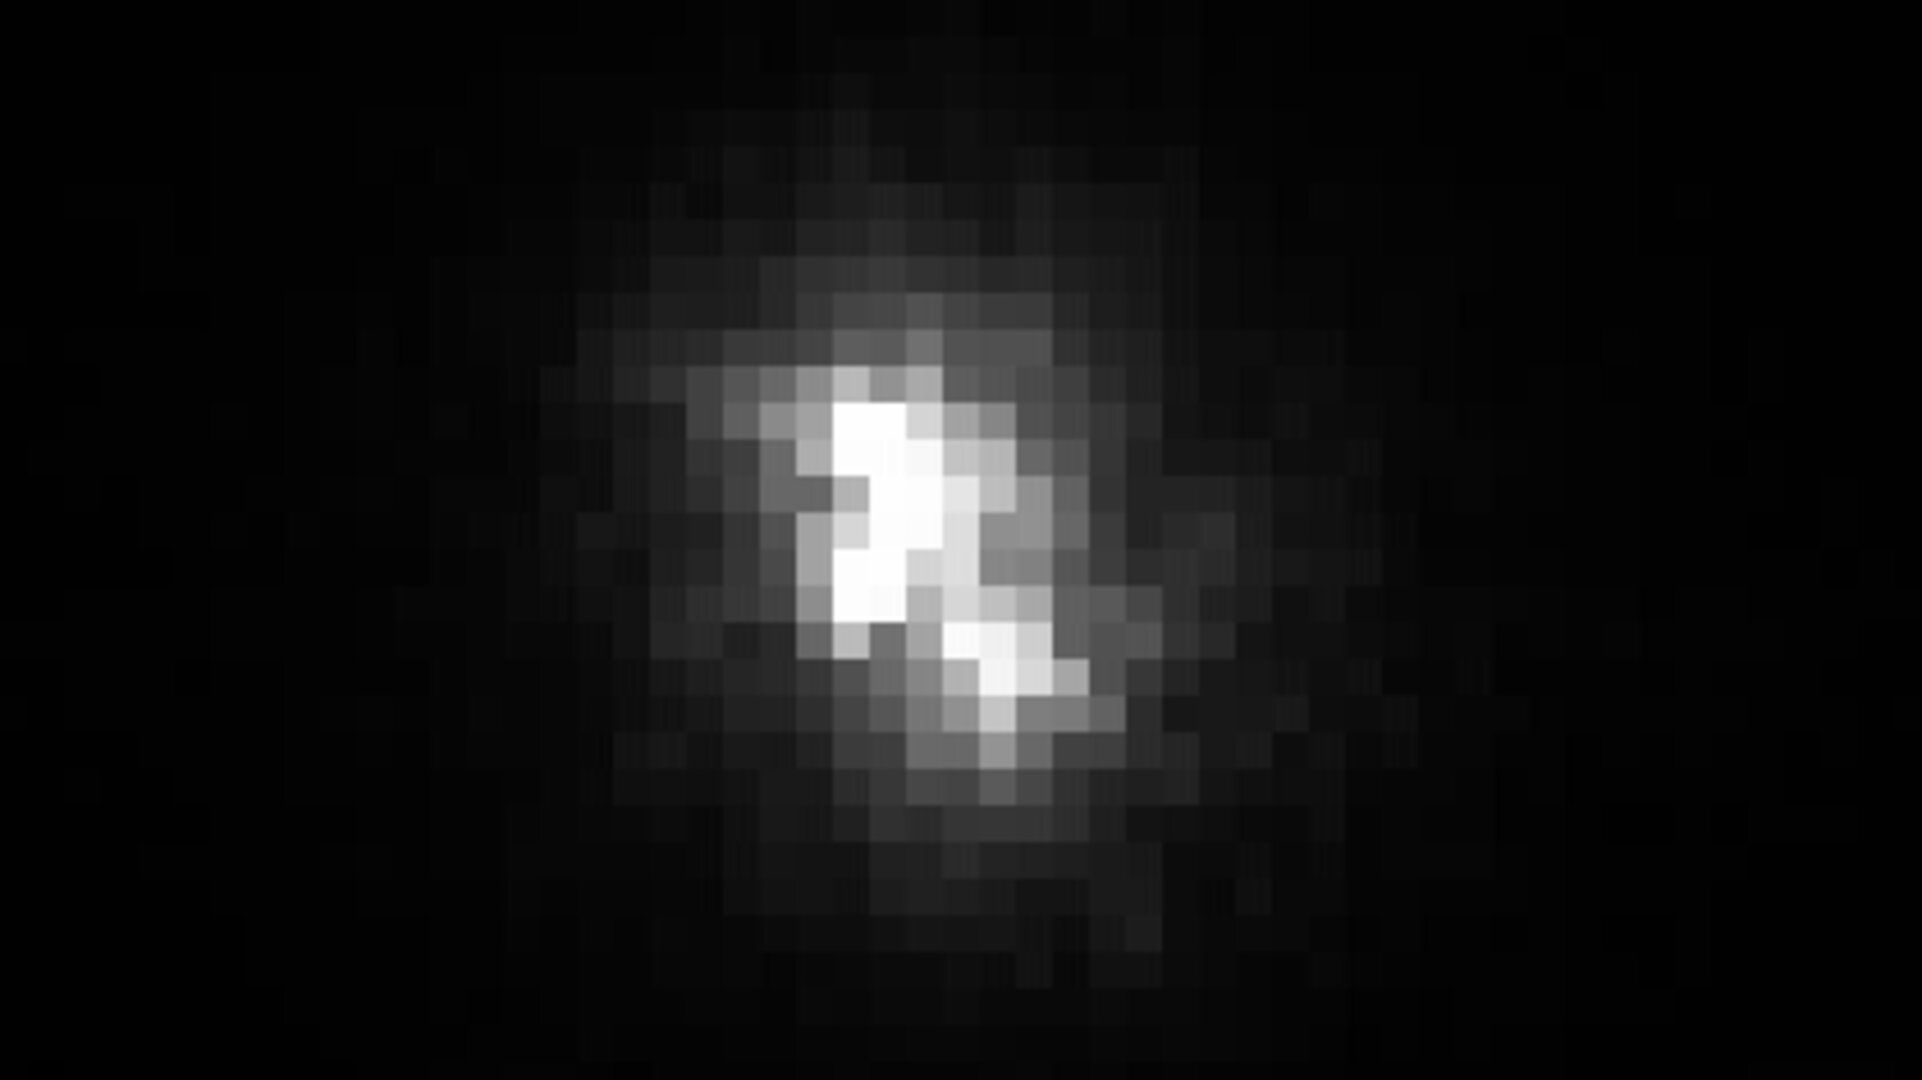 Focal spot: laser light seen by infrared camera